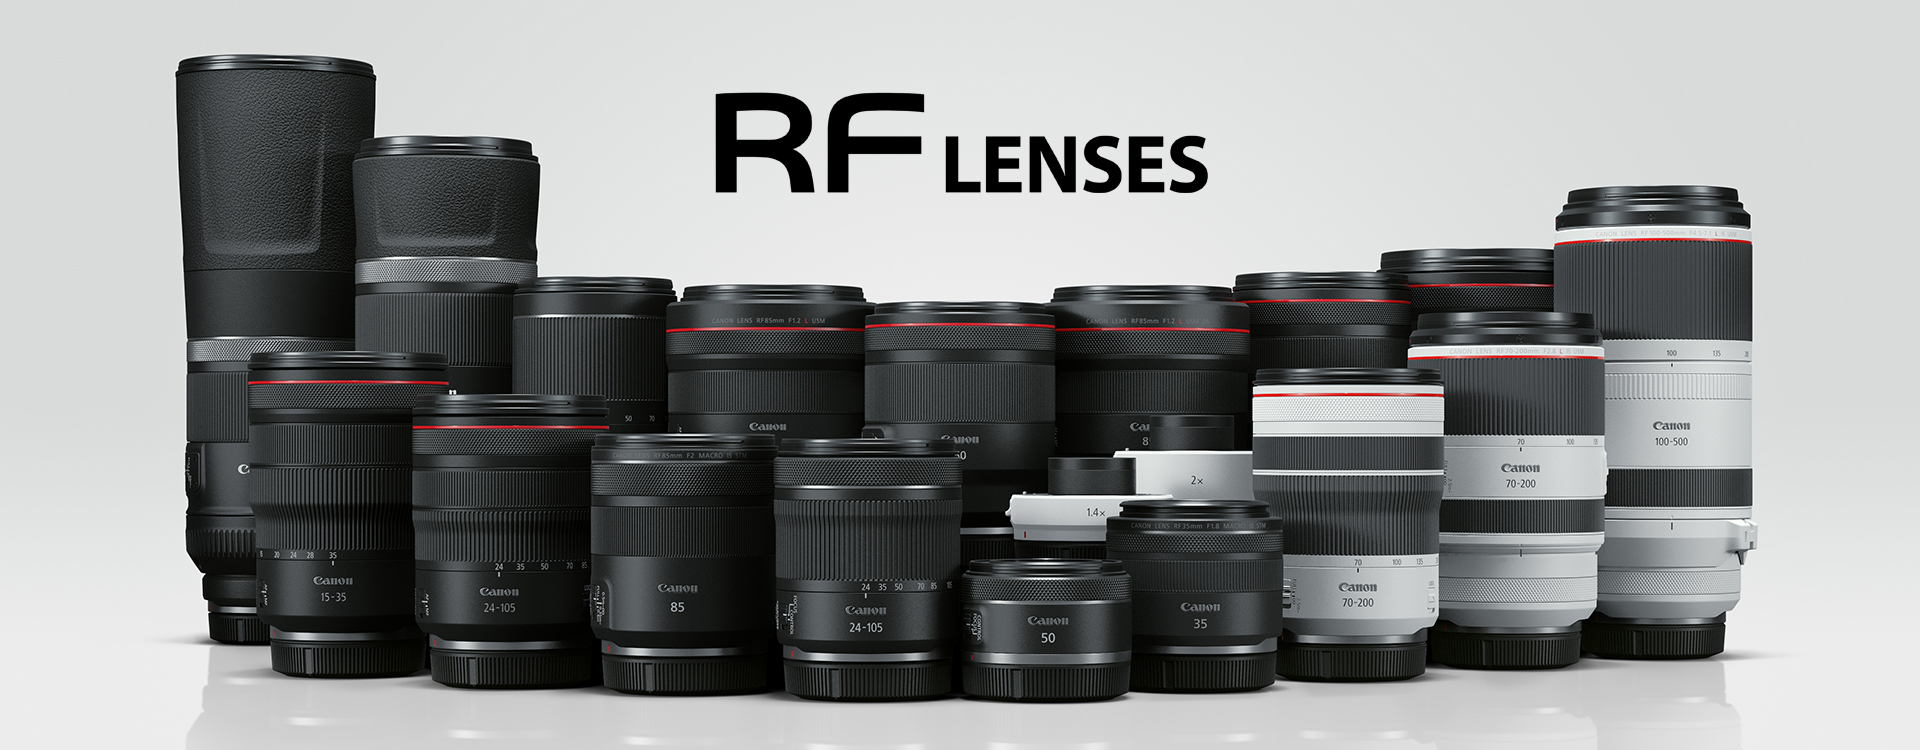 Product List - RF Lens - Canon HongKong